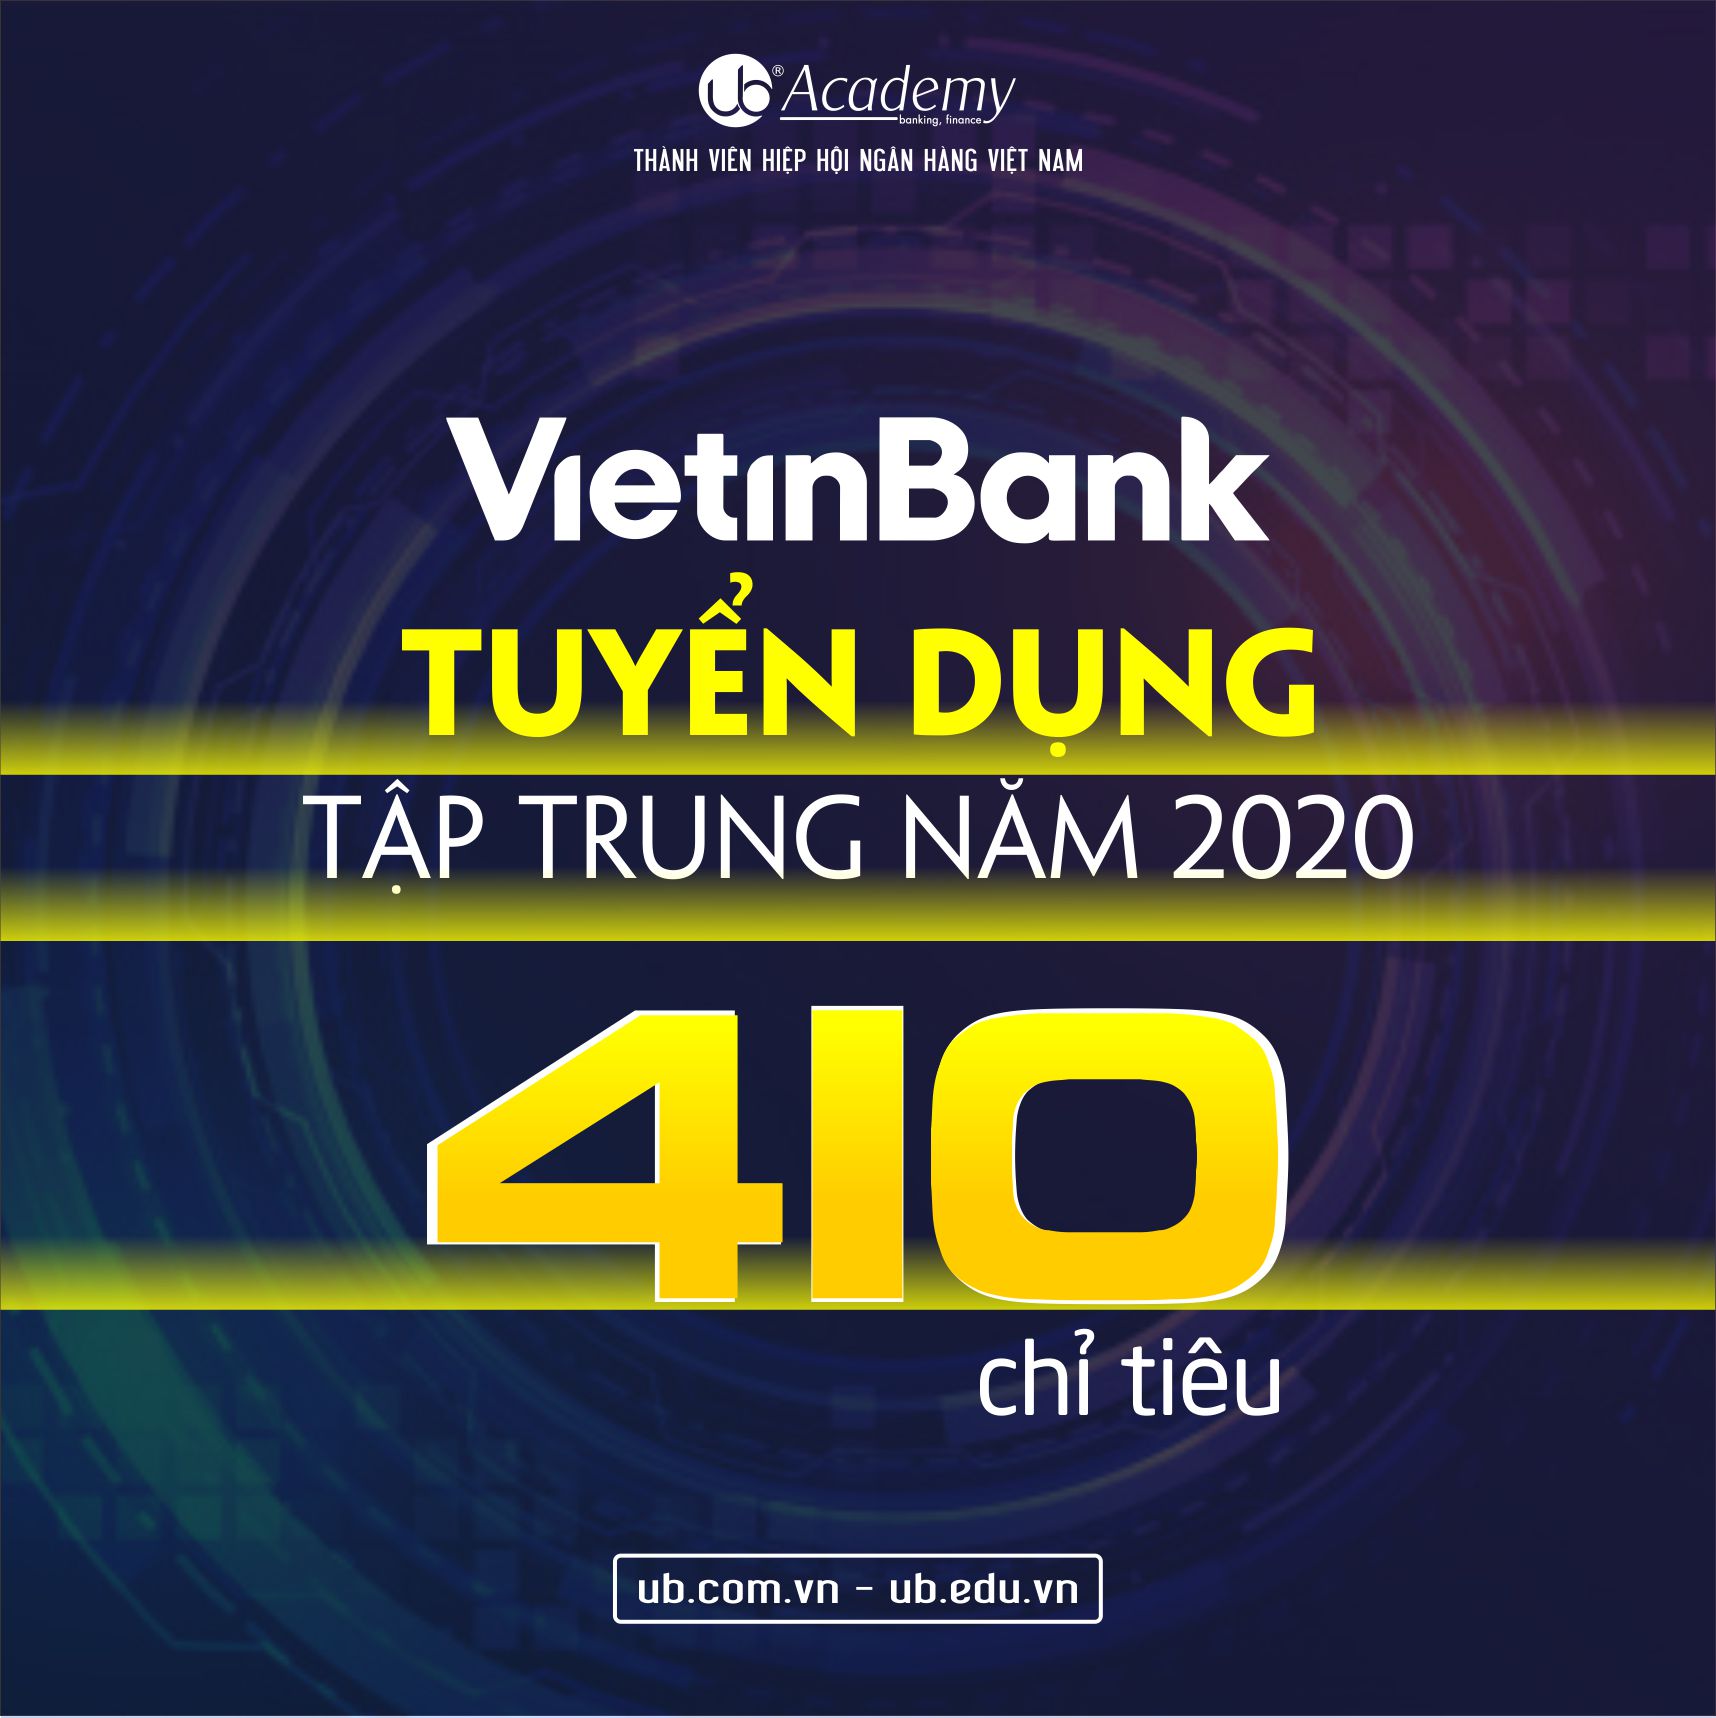 VietinBank Tuyển dụng 2020 410 CHỈ TIÊU.jpg